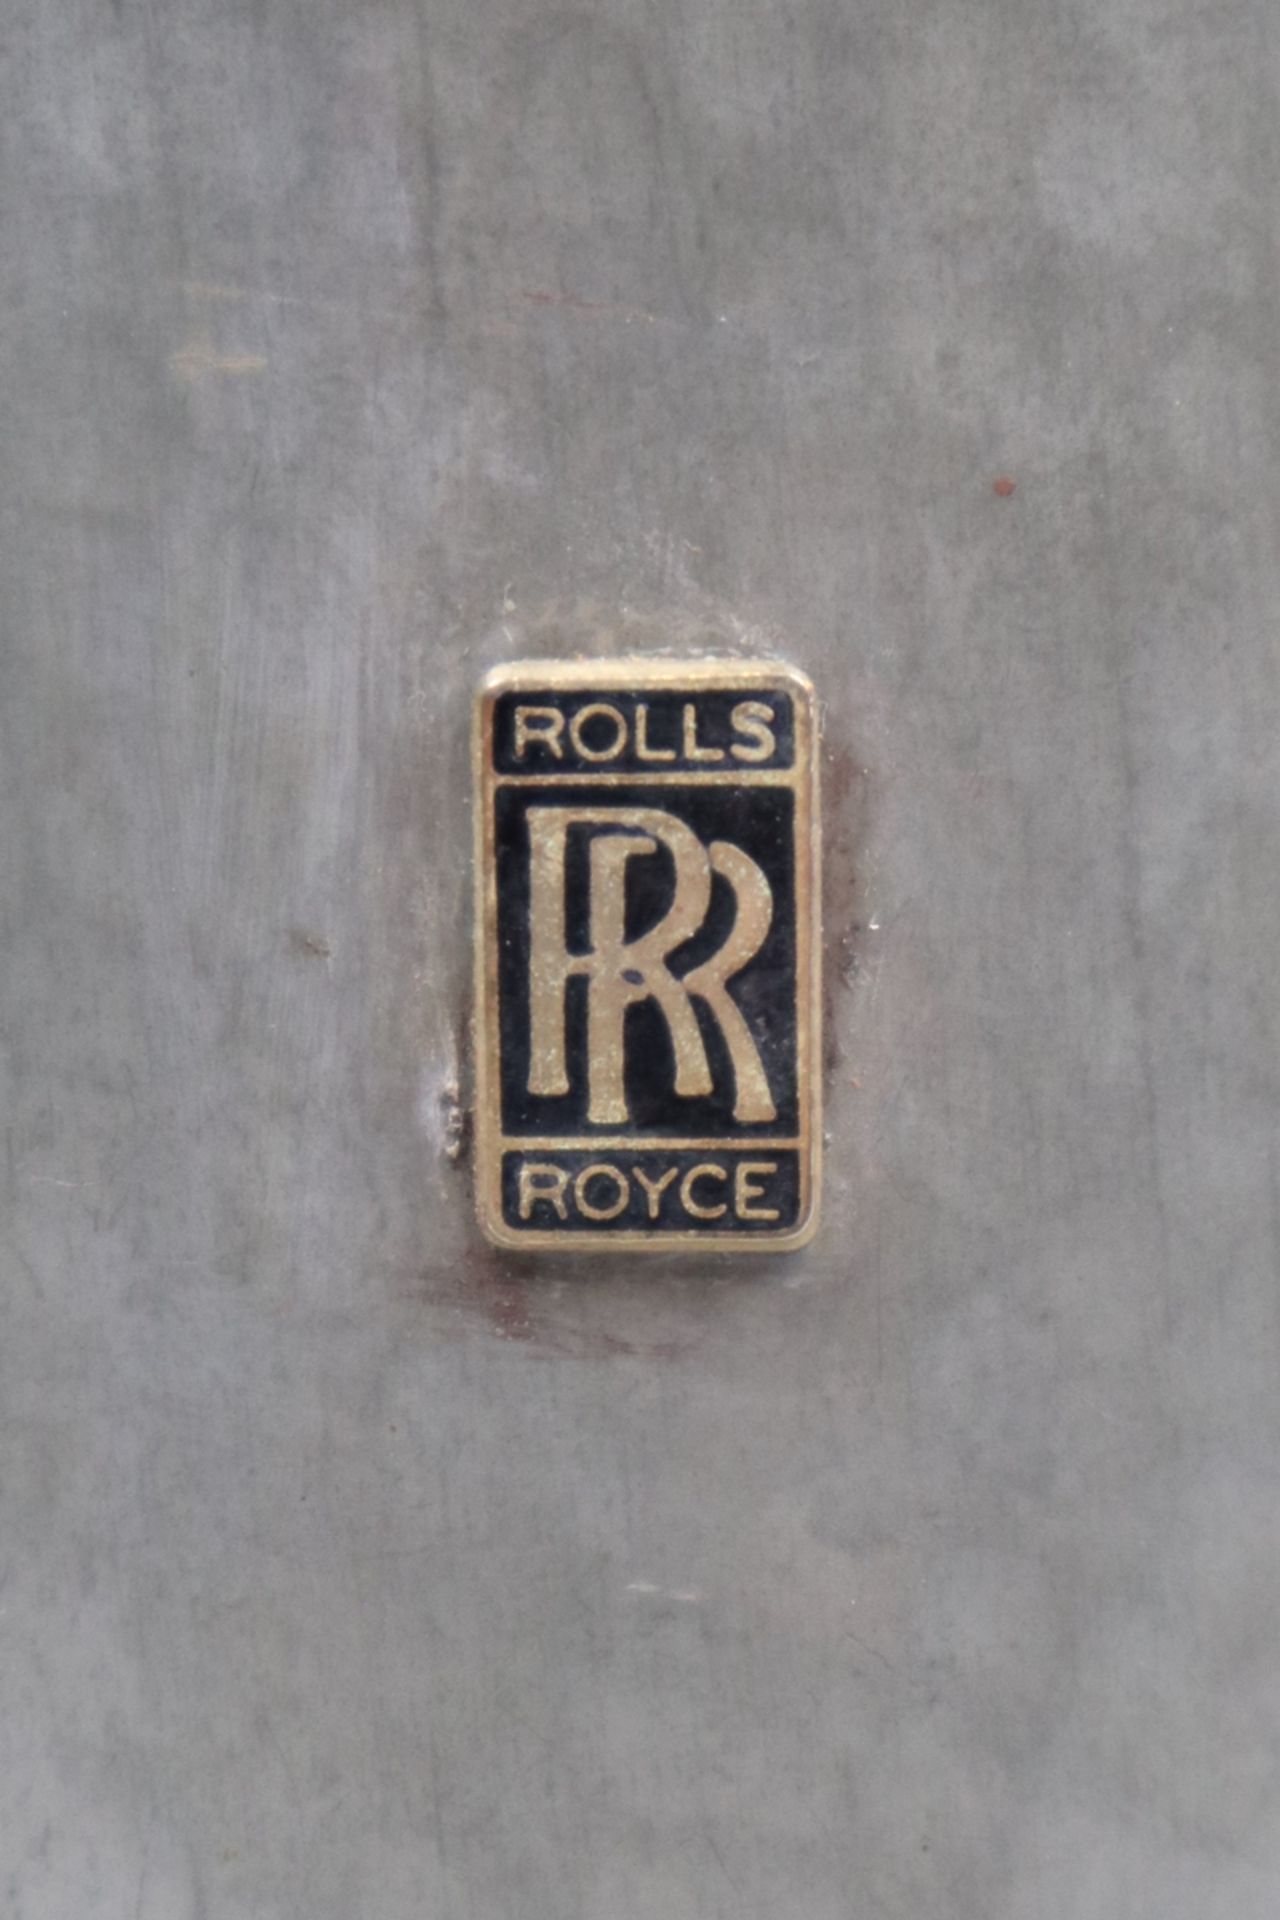 Rolls Royce - Pewter beer tankard - Image 3 of 3